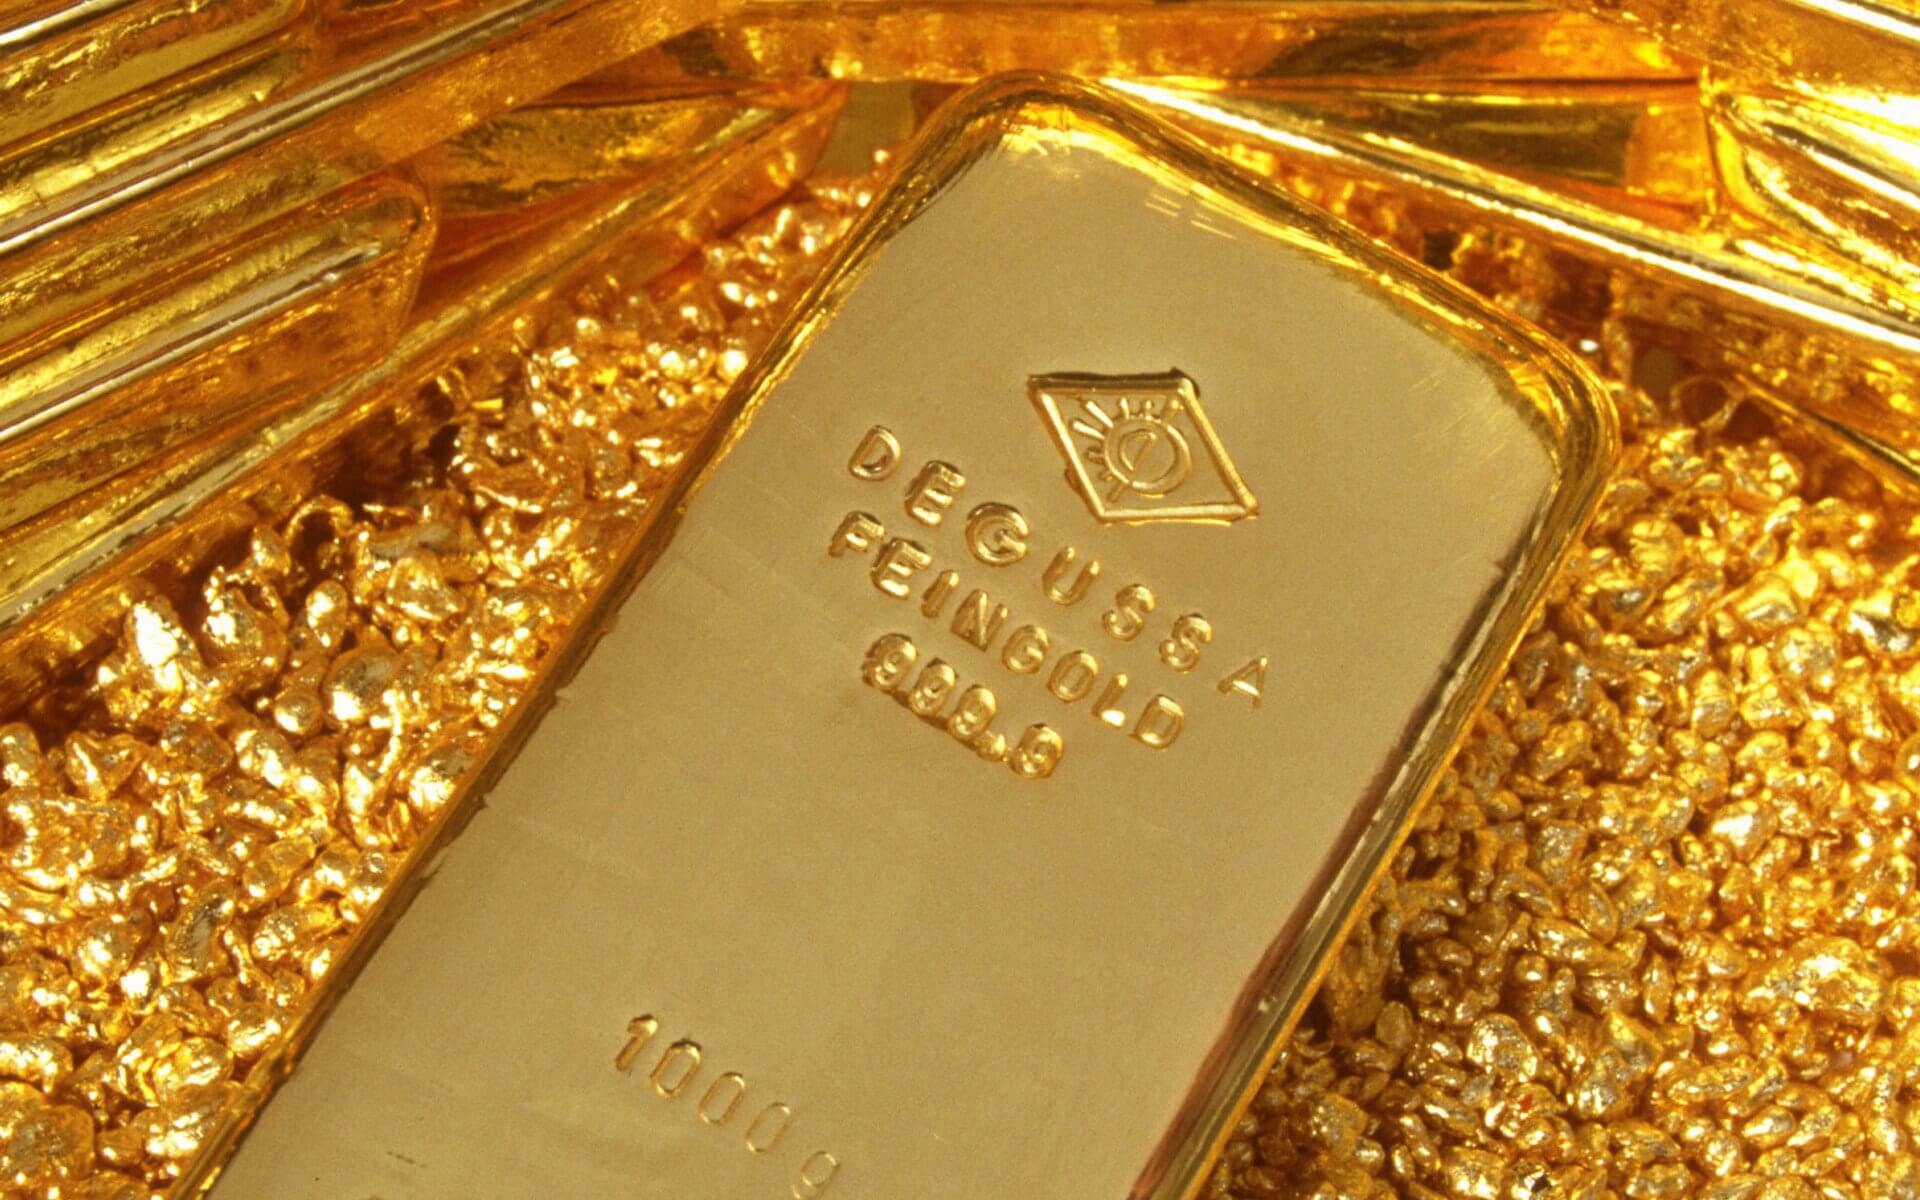 رتفاع جديد في سعر الذهب اليوم الخميس 5/9/2019 وعيار 21 يسجل 720.01 جنيه